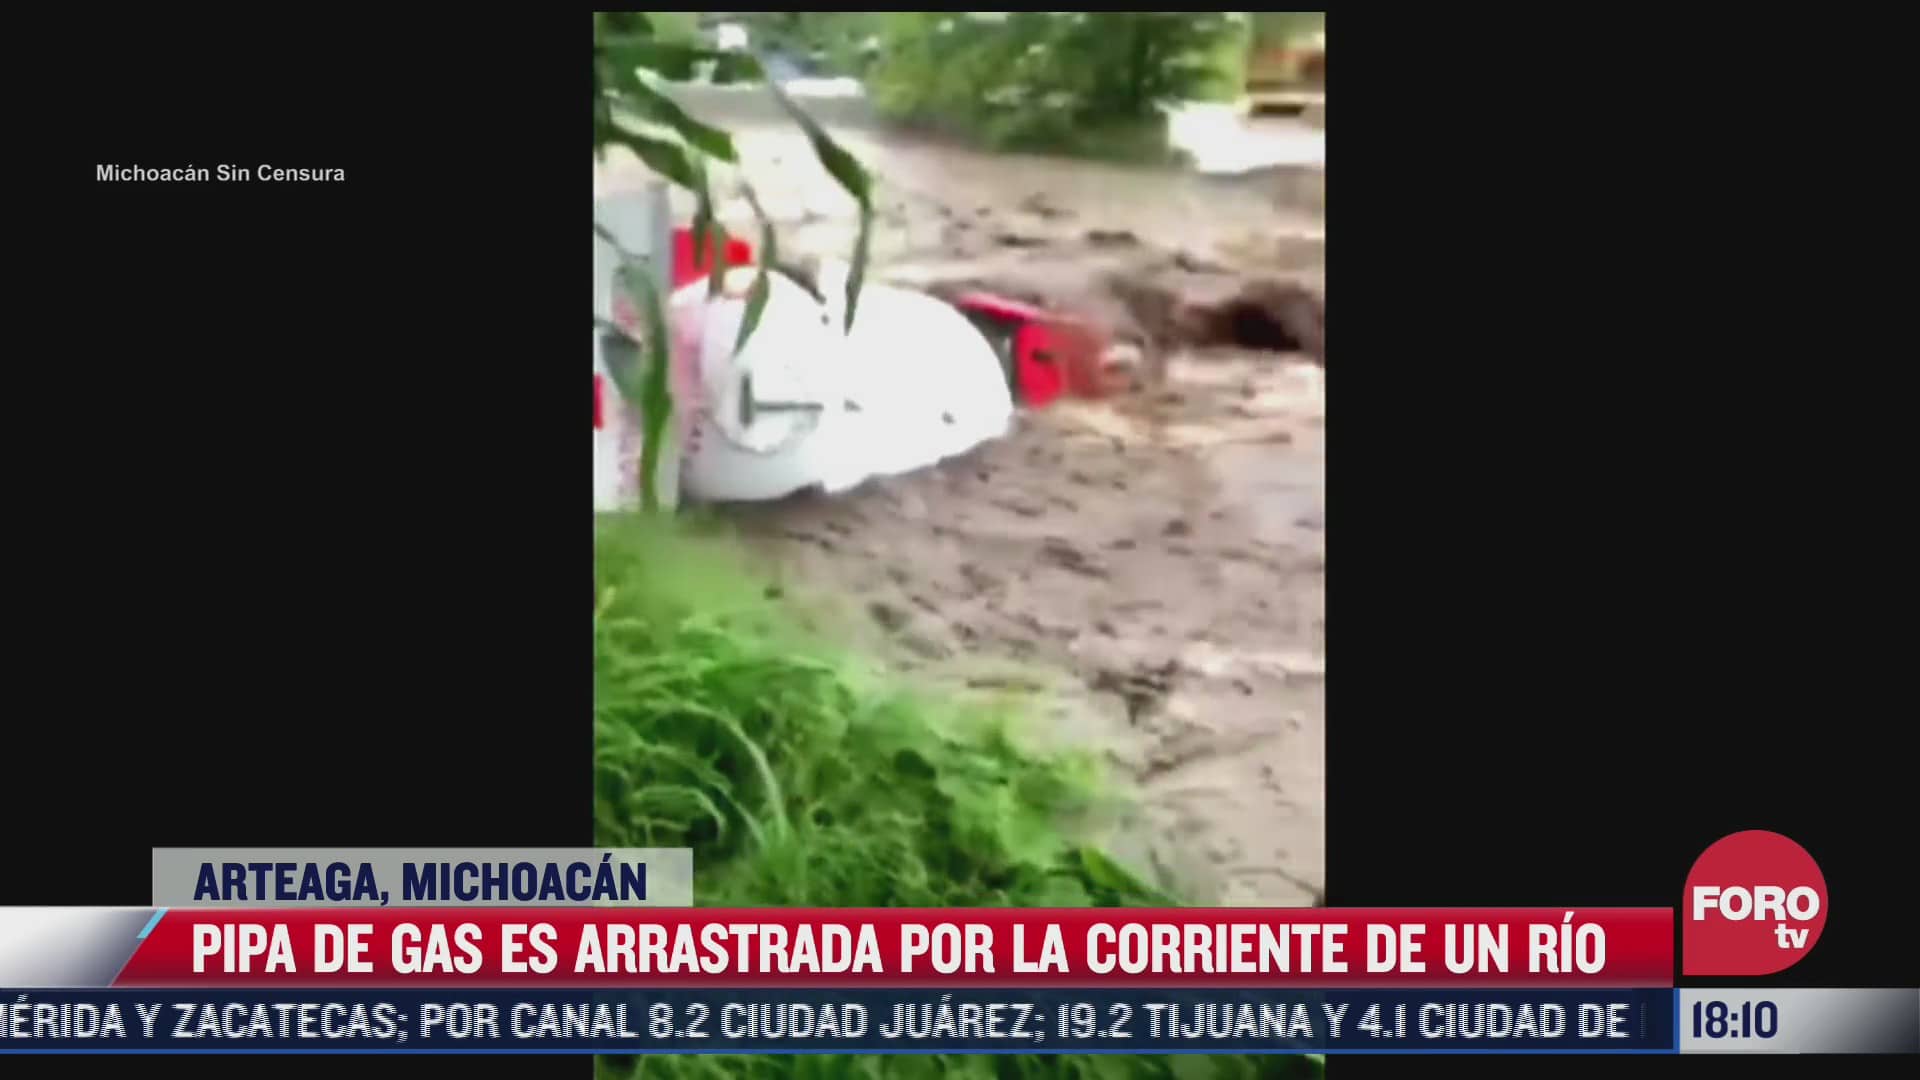 pipa de gas es arrastrada por corriente de rio en michoacan